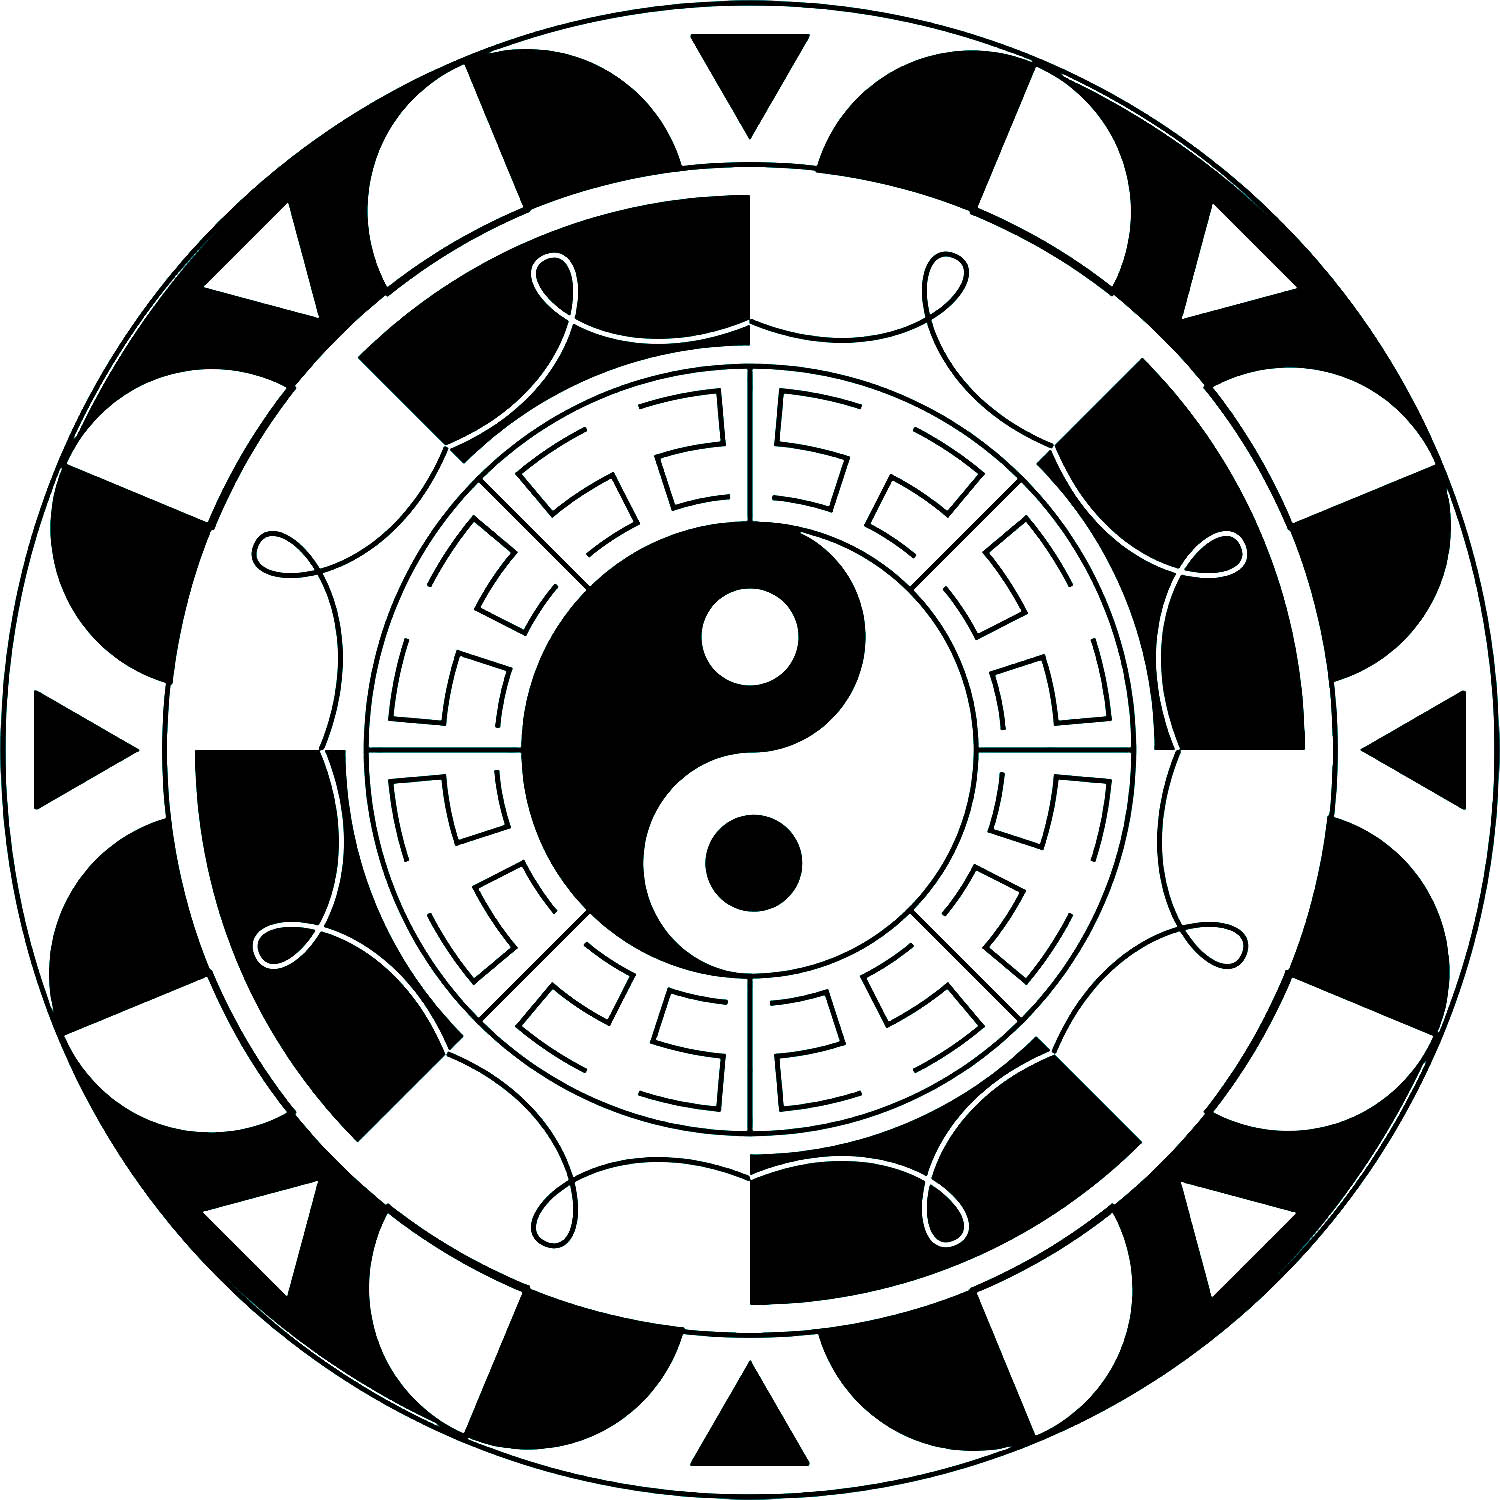 Mandala com poucos pormenores e o símbolo Yin & Yang no centro